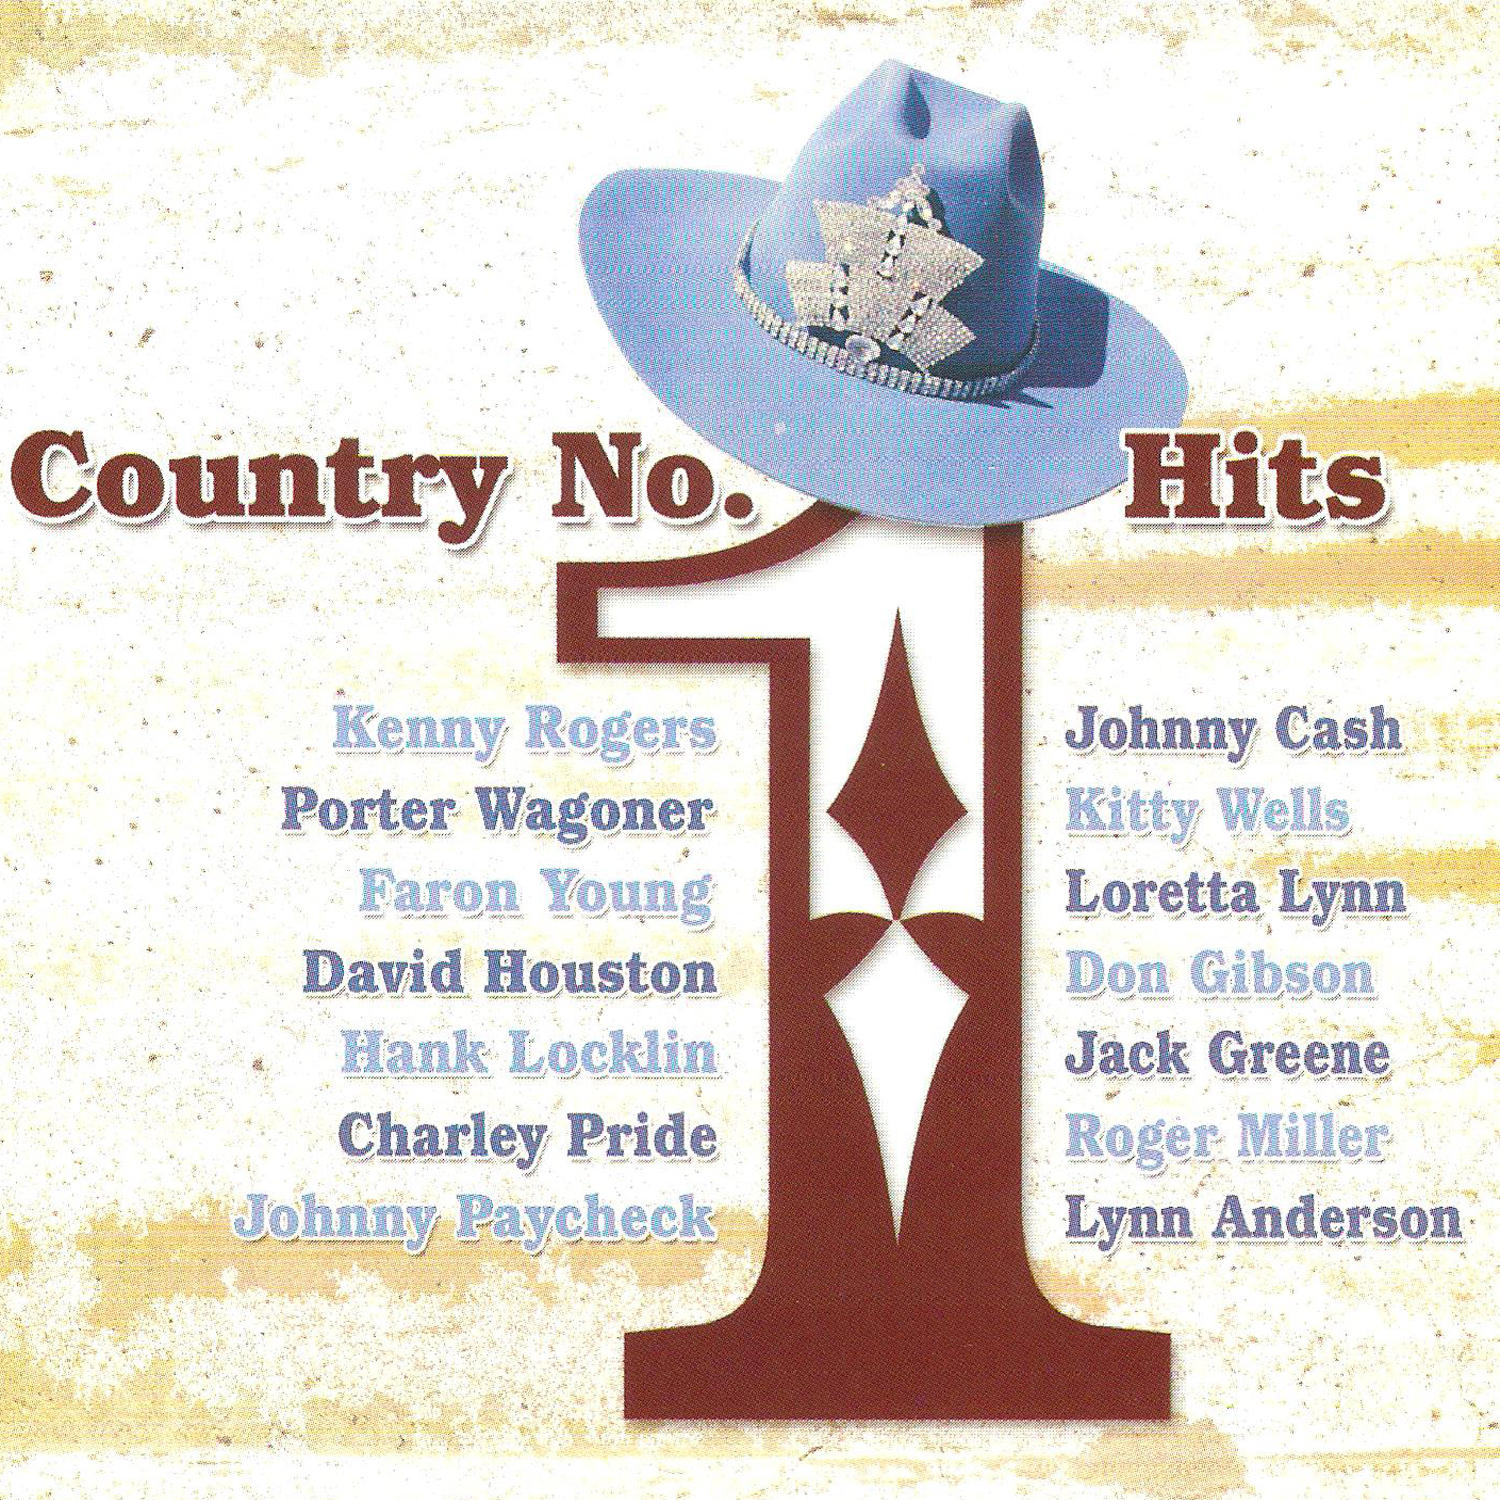 Country No. 1 Hits